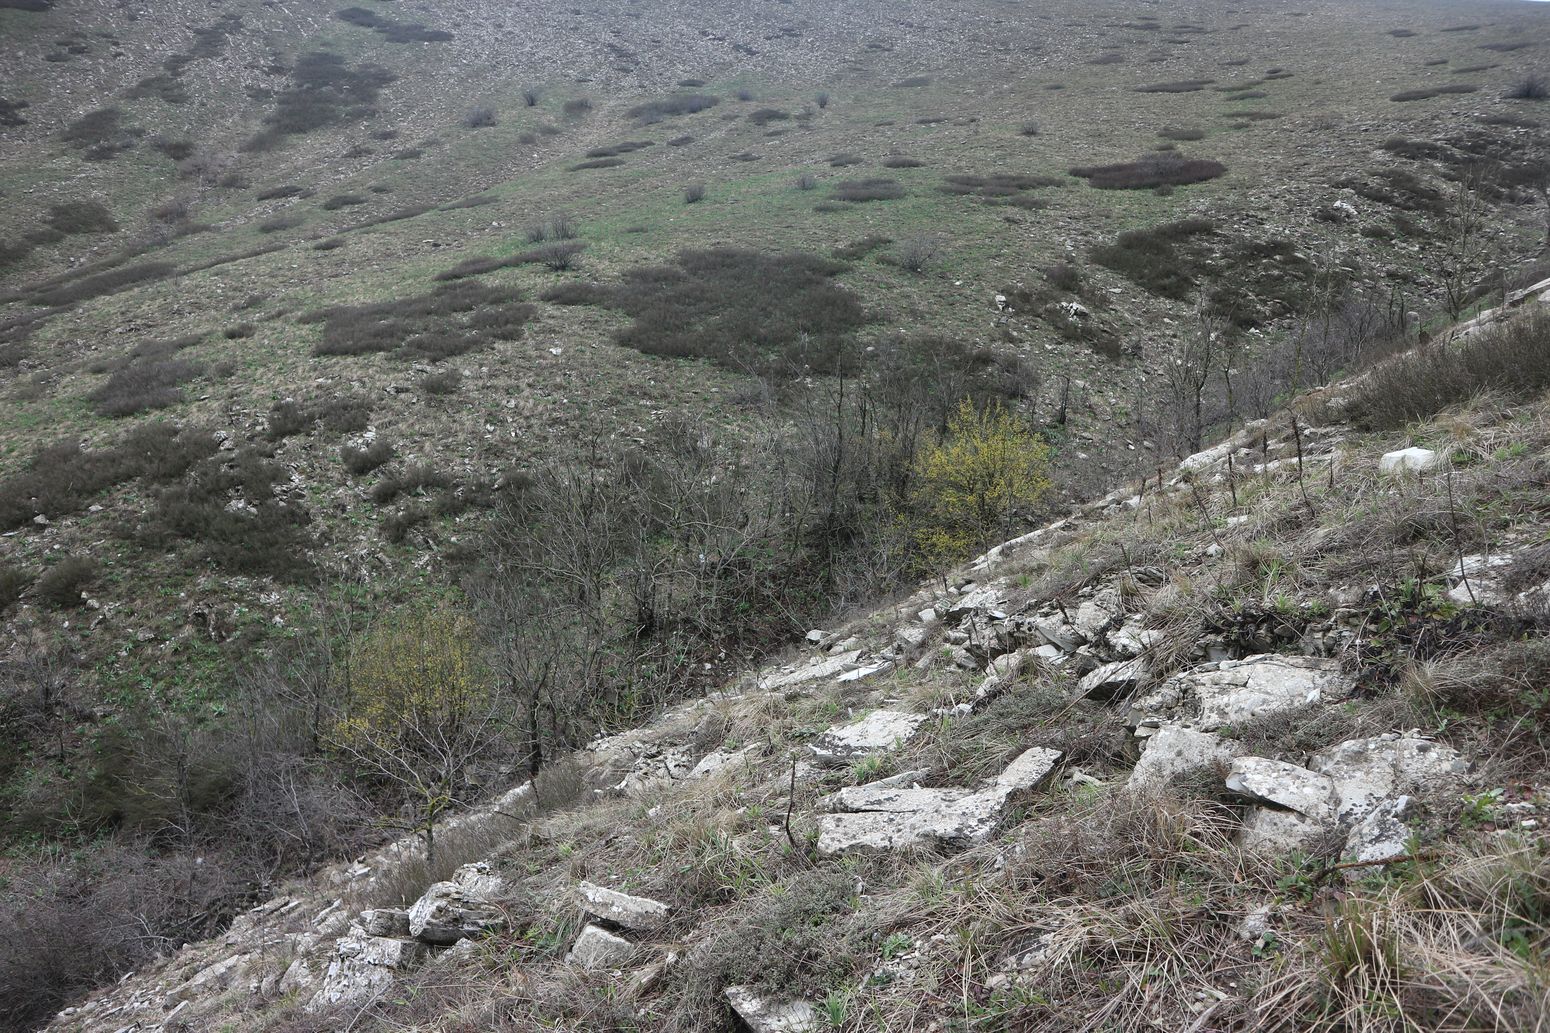 Истоки Мефодиевского ручья, изображение ландшафта.